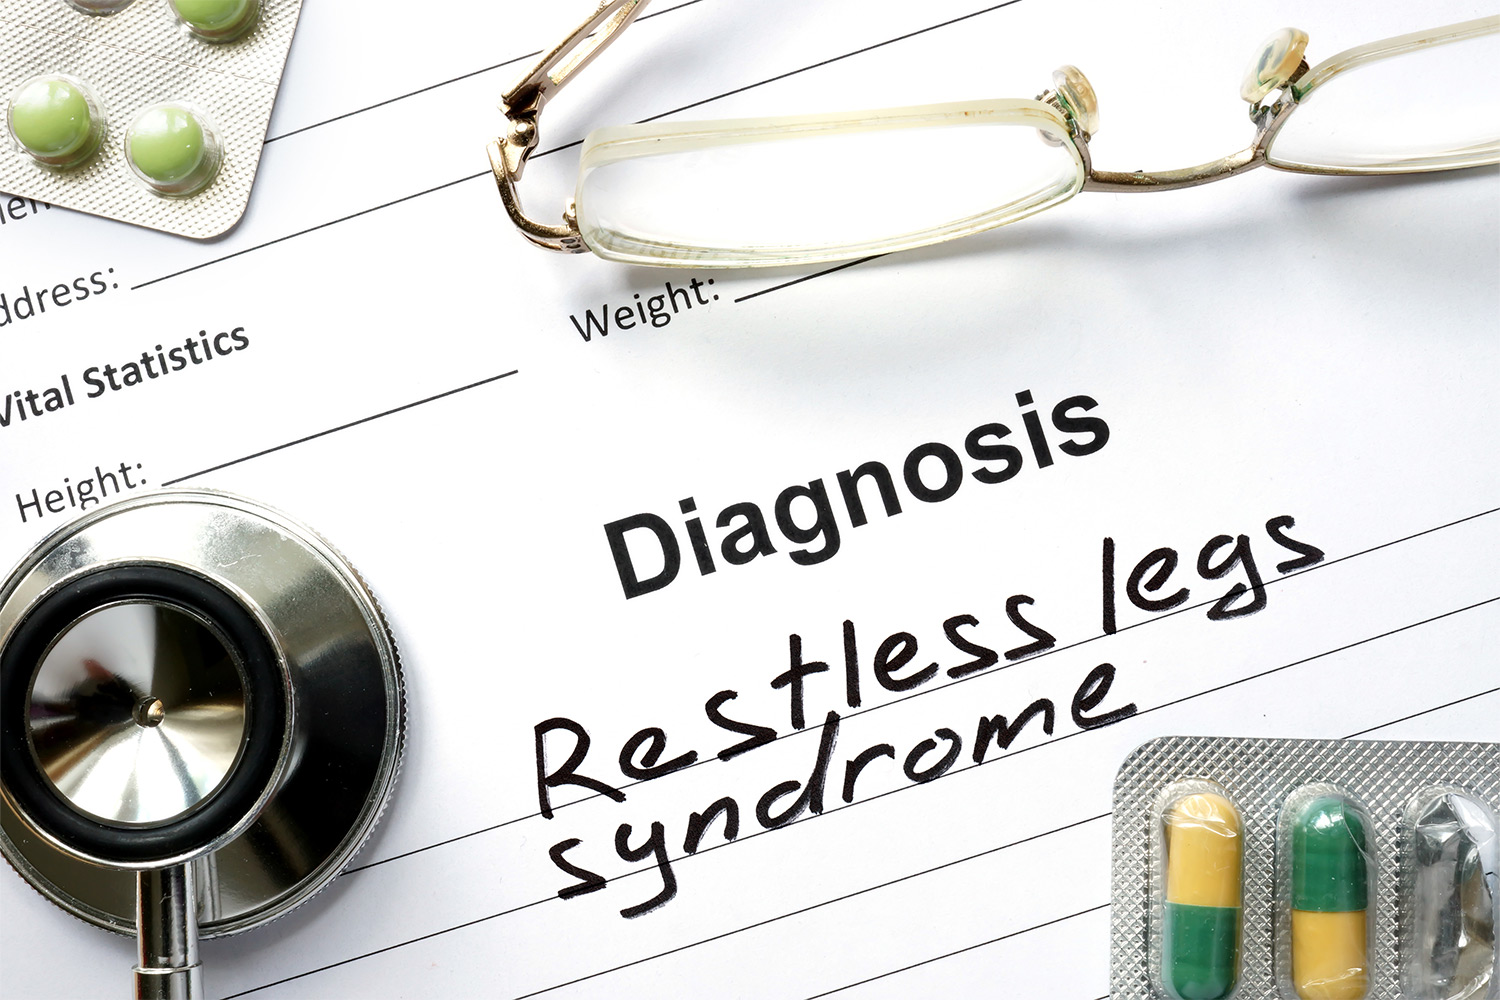 Restless Leg Syndrome VA Rating Broken Down